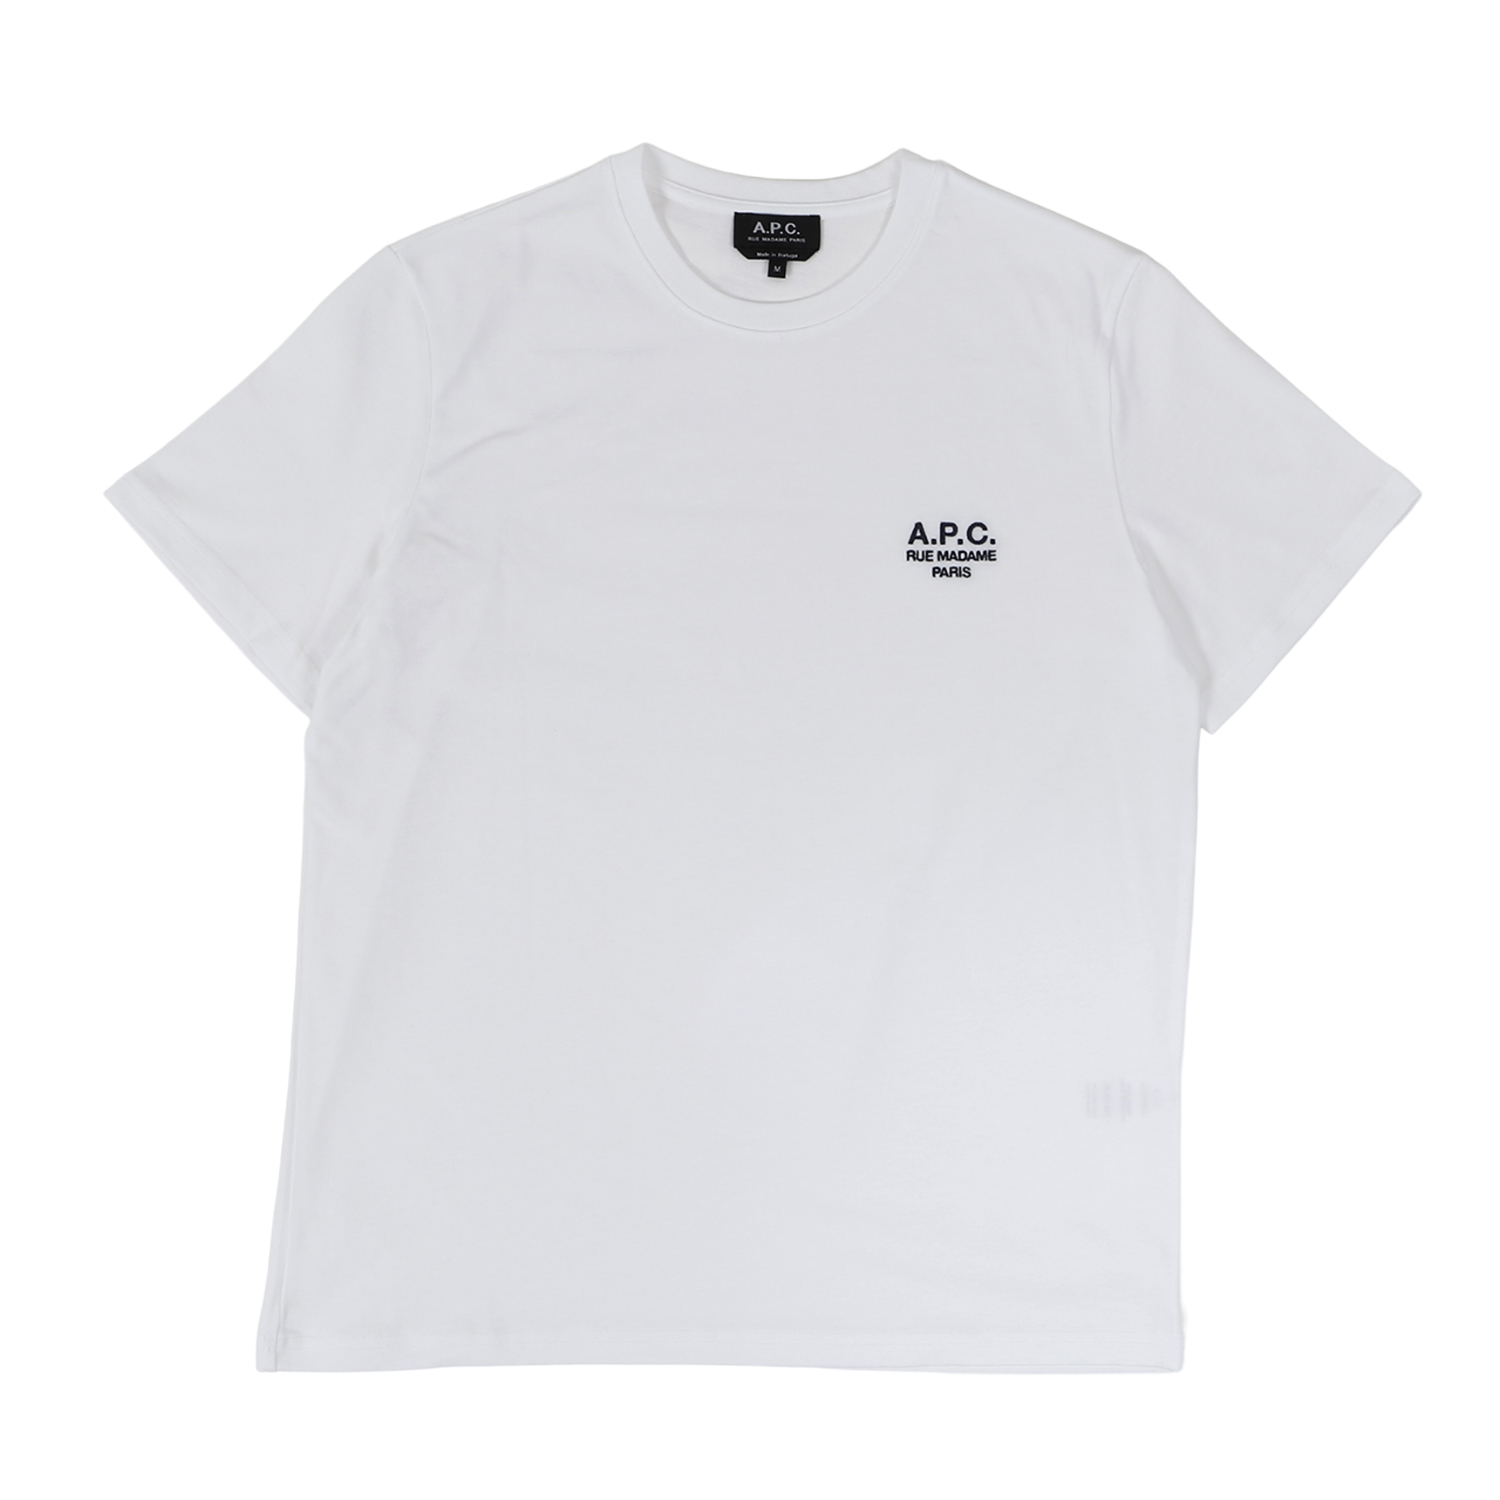 A.P.C. アーペーセー Tシャツ 半袖 メンズ RAYMOND ブラック ホワイト 黒 白 CO...